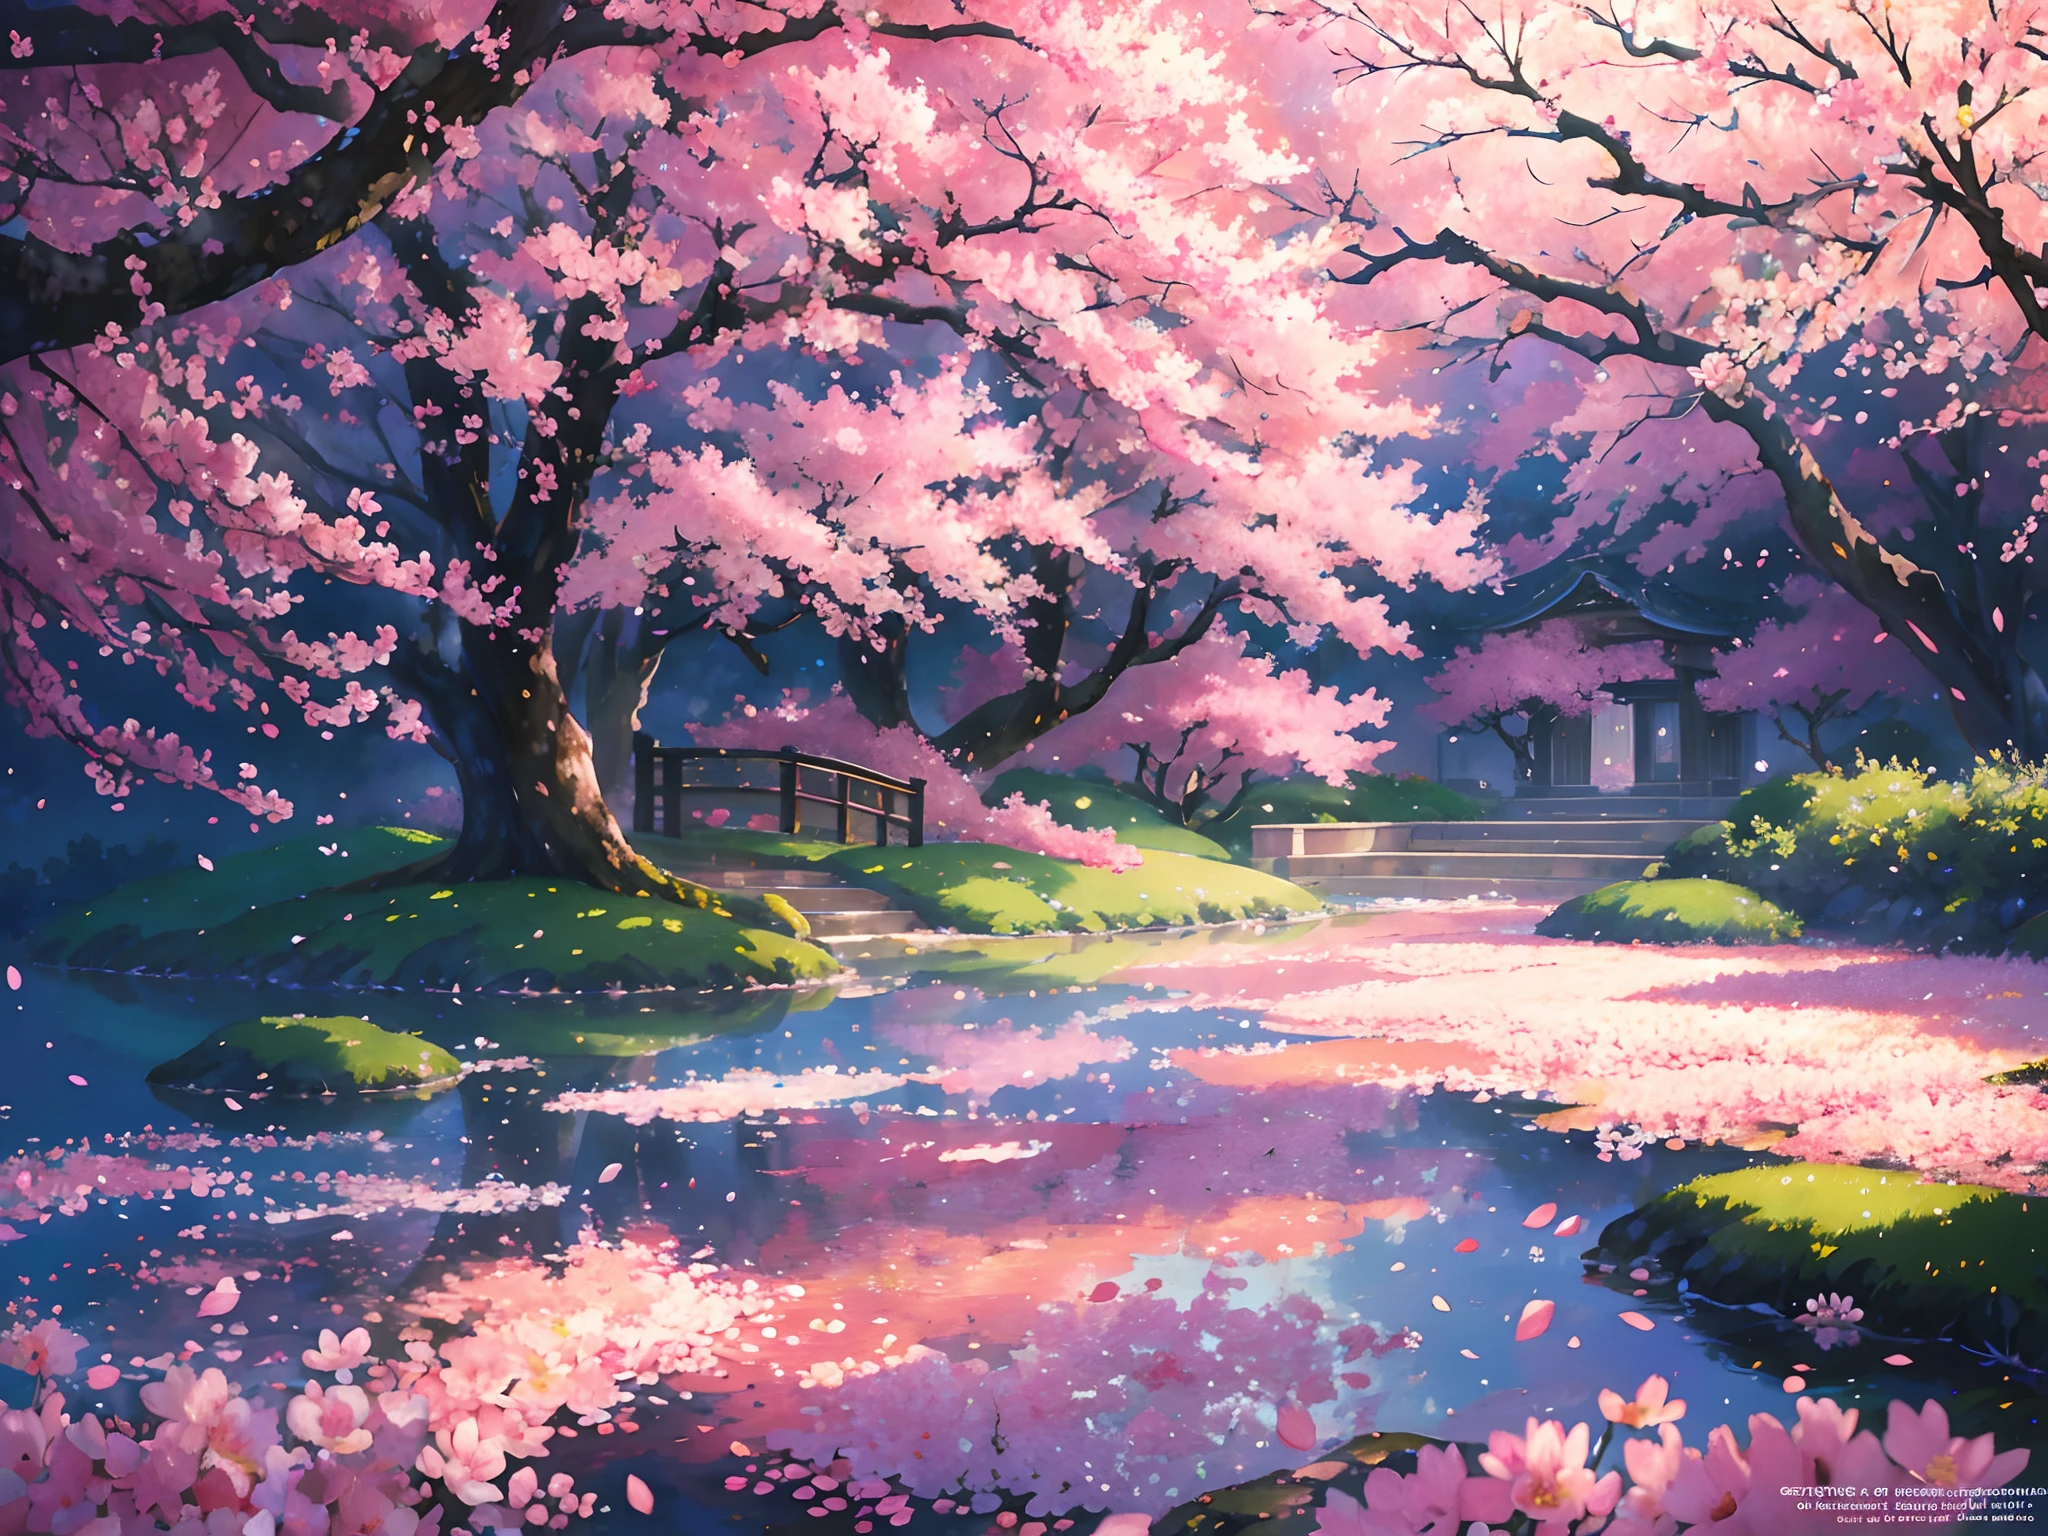 風になびく美しい桜, 花びらに泡立つ露の滴で, 見事なアニメアートスタイル, 鮮やかな色, 柔らかく夢のような照明, 高解像度とリアルなディテール.